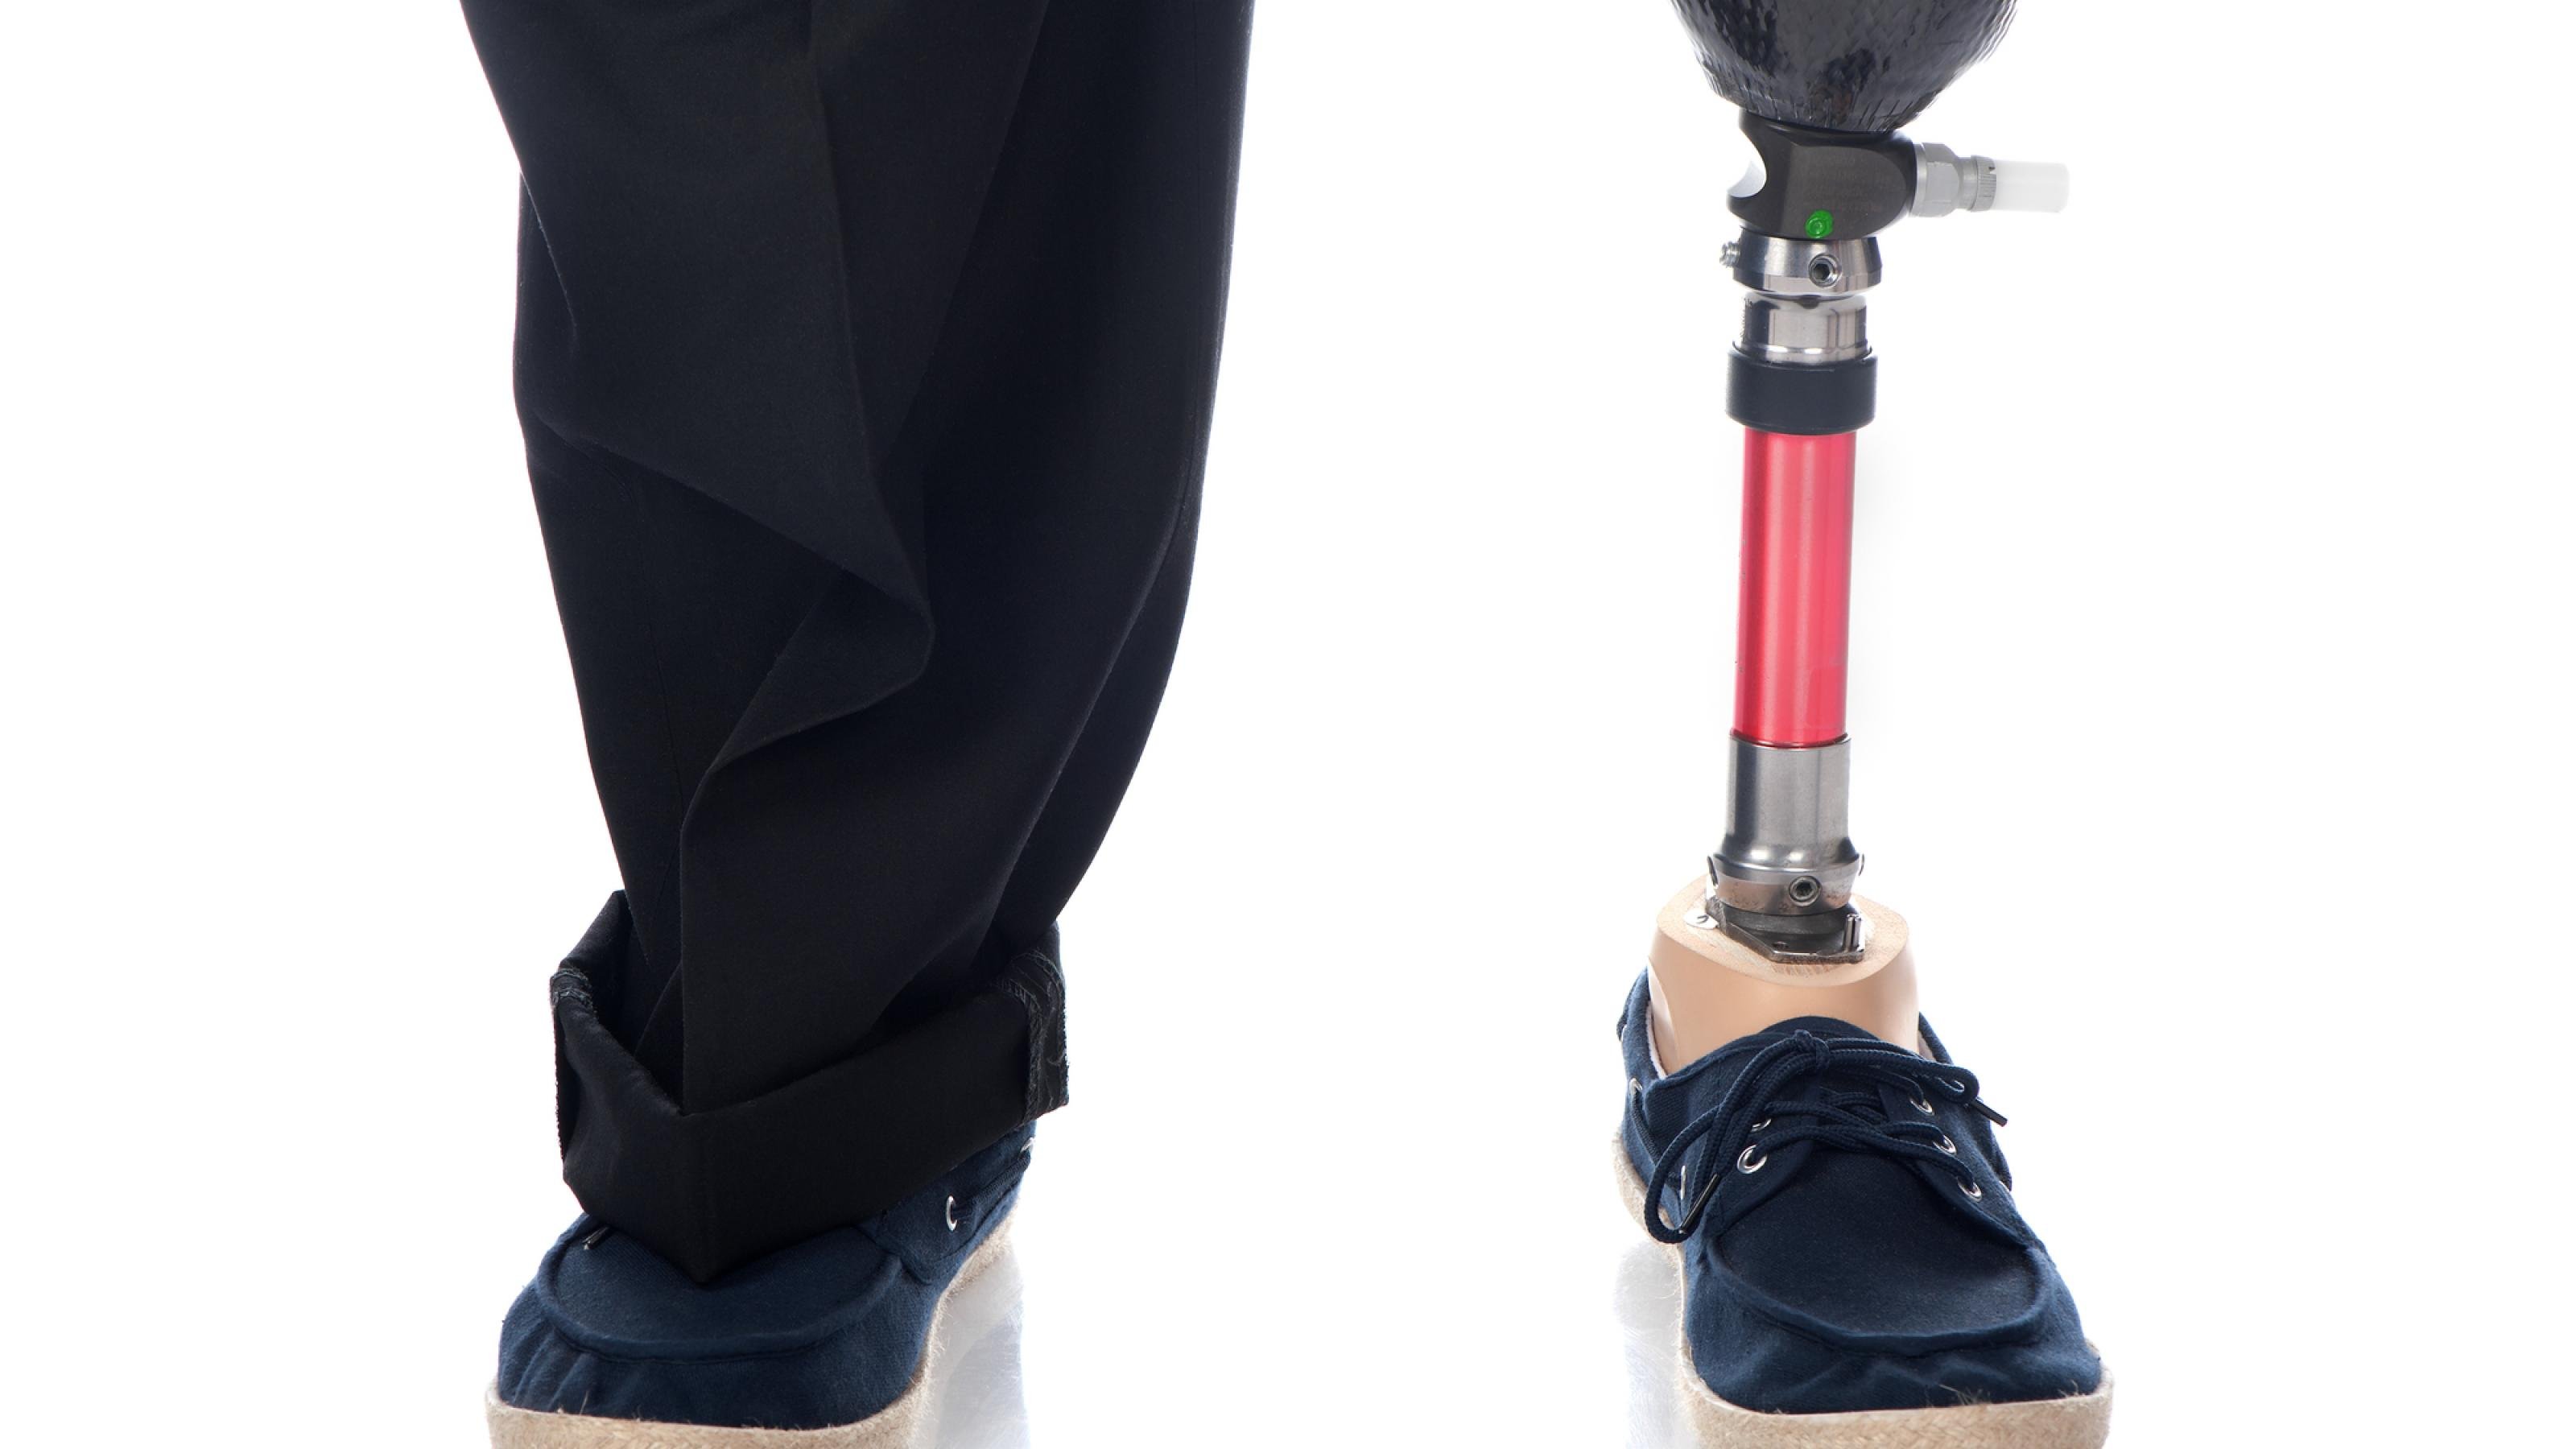 Zwei Beine eines erwachsenen Mannes, der links eine Unterschenkelprothese hat und rechts sein gesundes Bein. Beide Füße stecken im Schuhen.